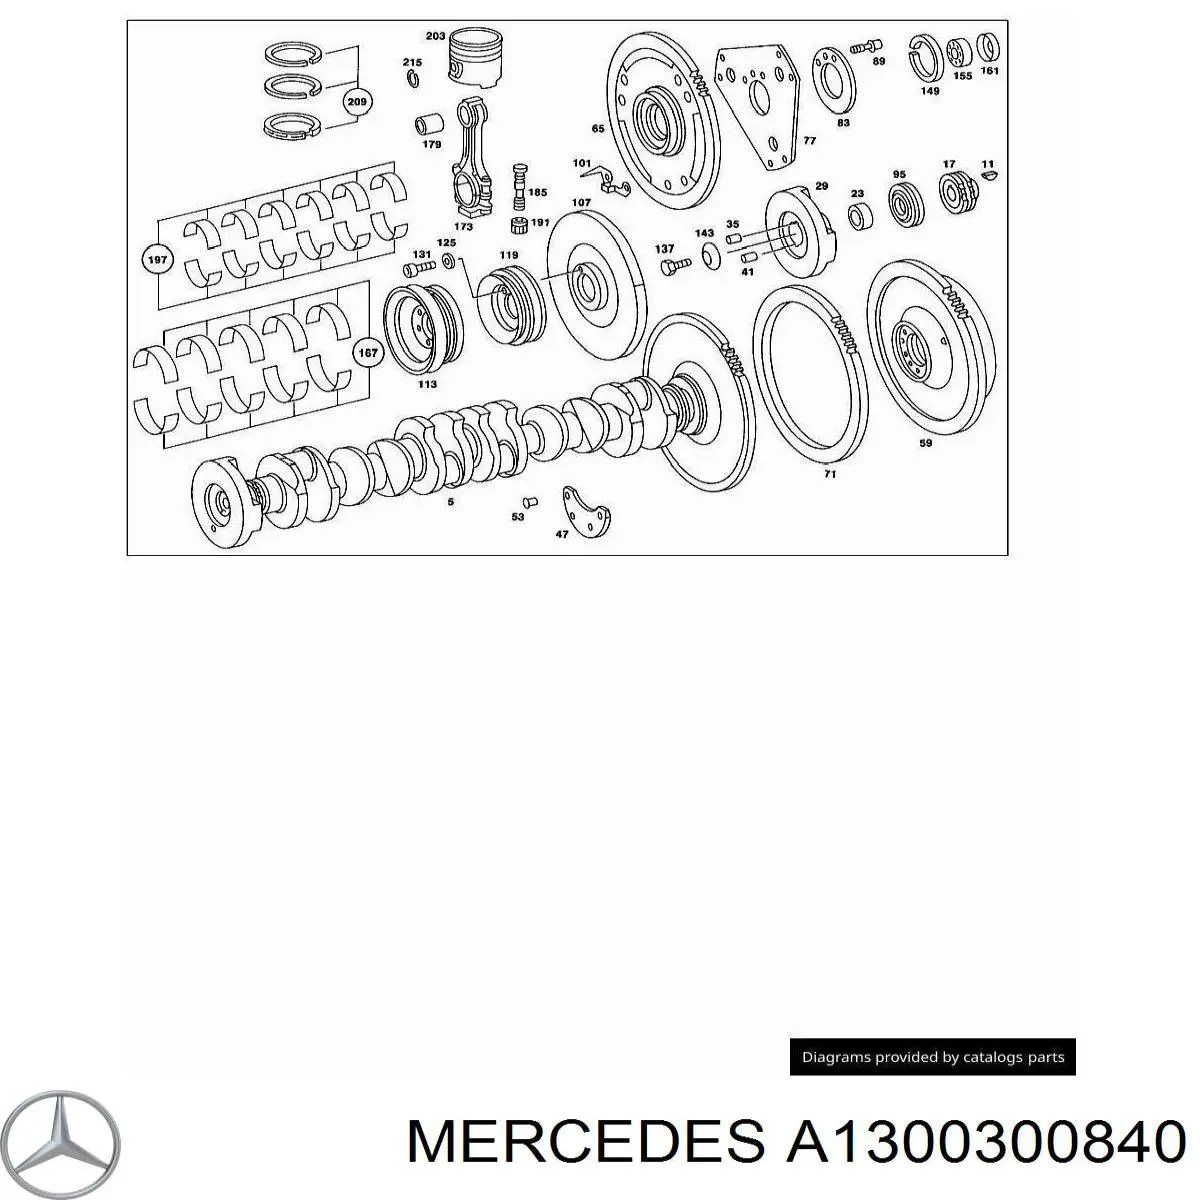 1300300840 Mercedes juego de cojinetes de cigüeñal, cota de reparación +0,75 mm